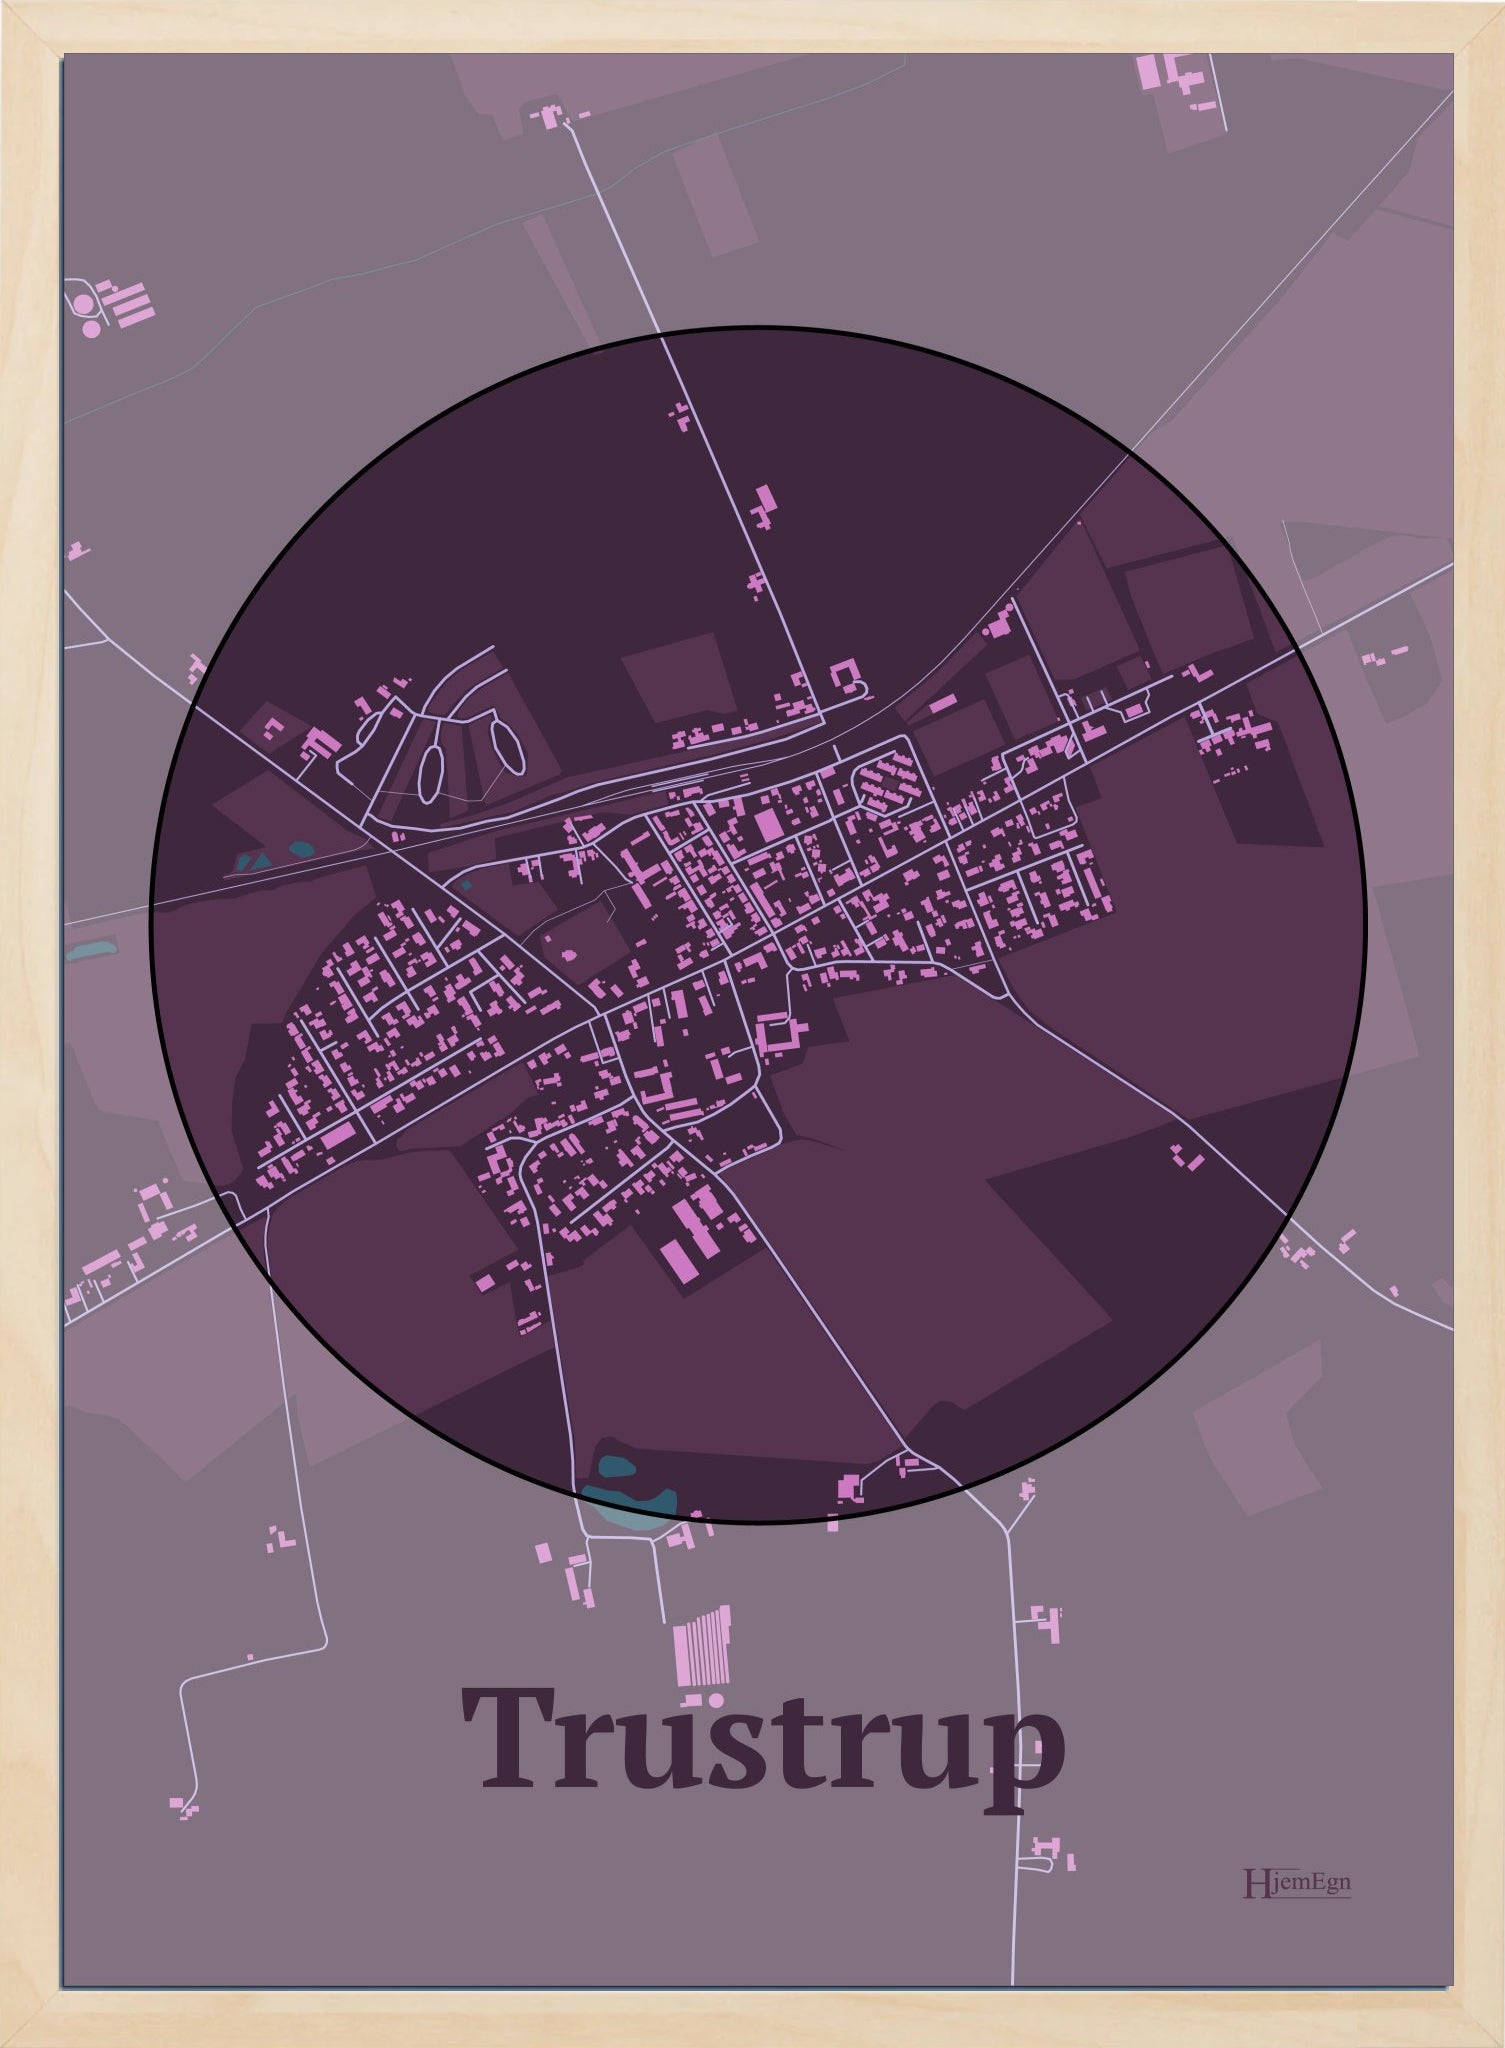 Trustrup plakat i farve mørk rød og HjemEgn.dk design centrum. Design bykort for Trustrup